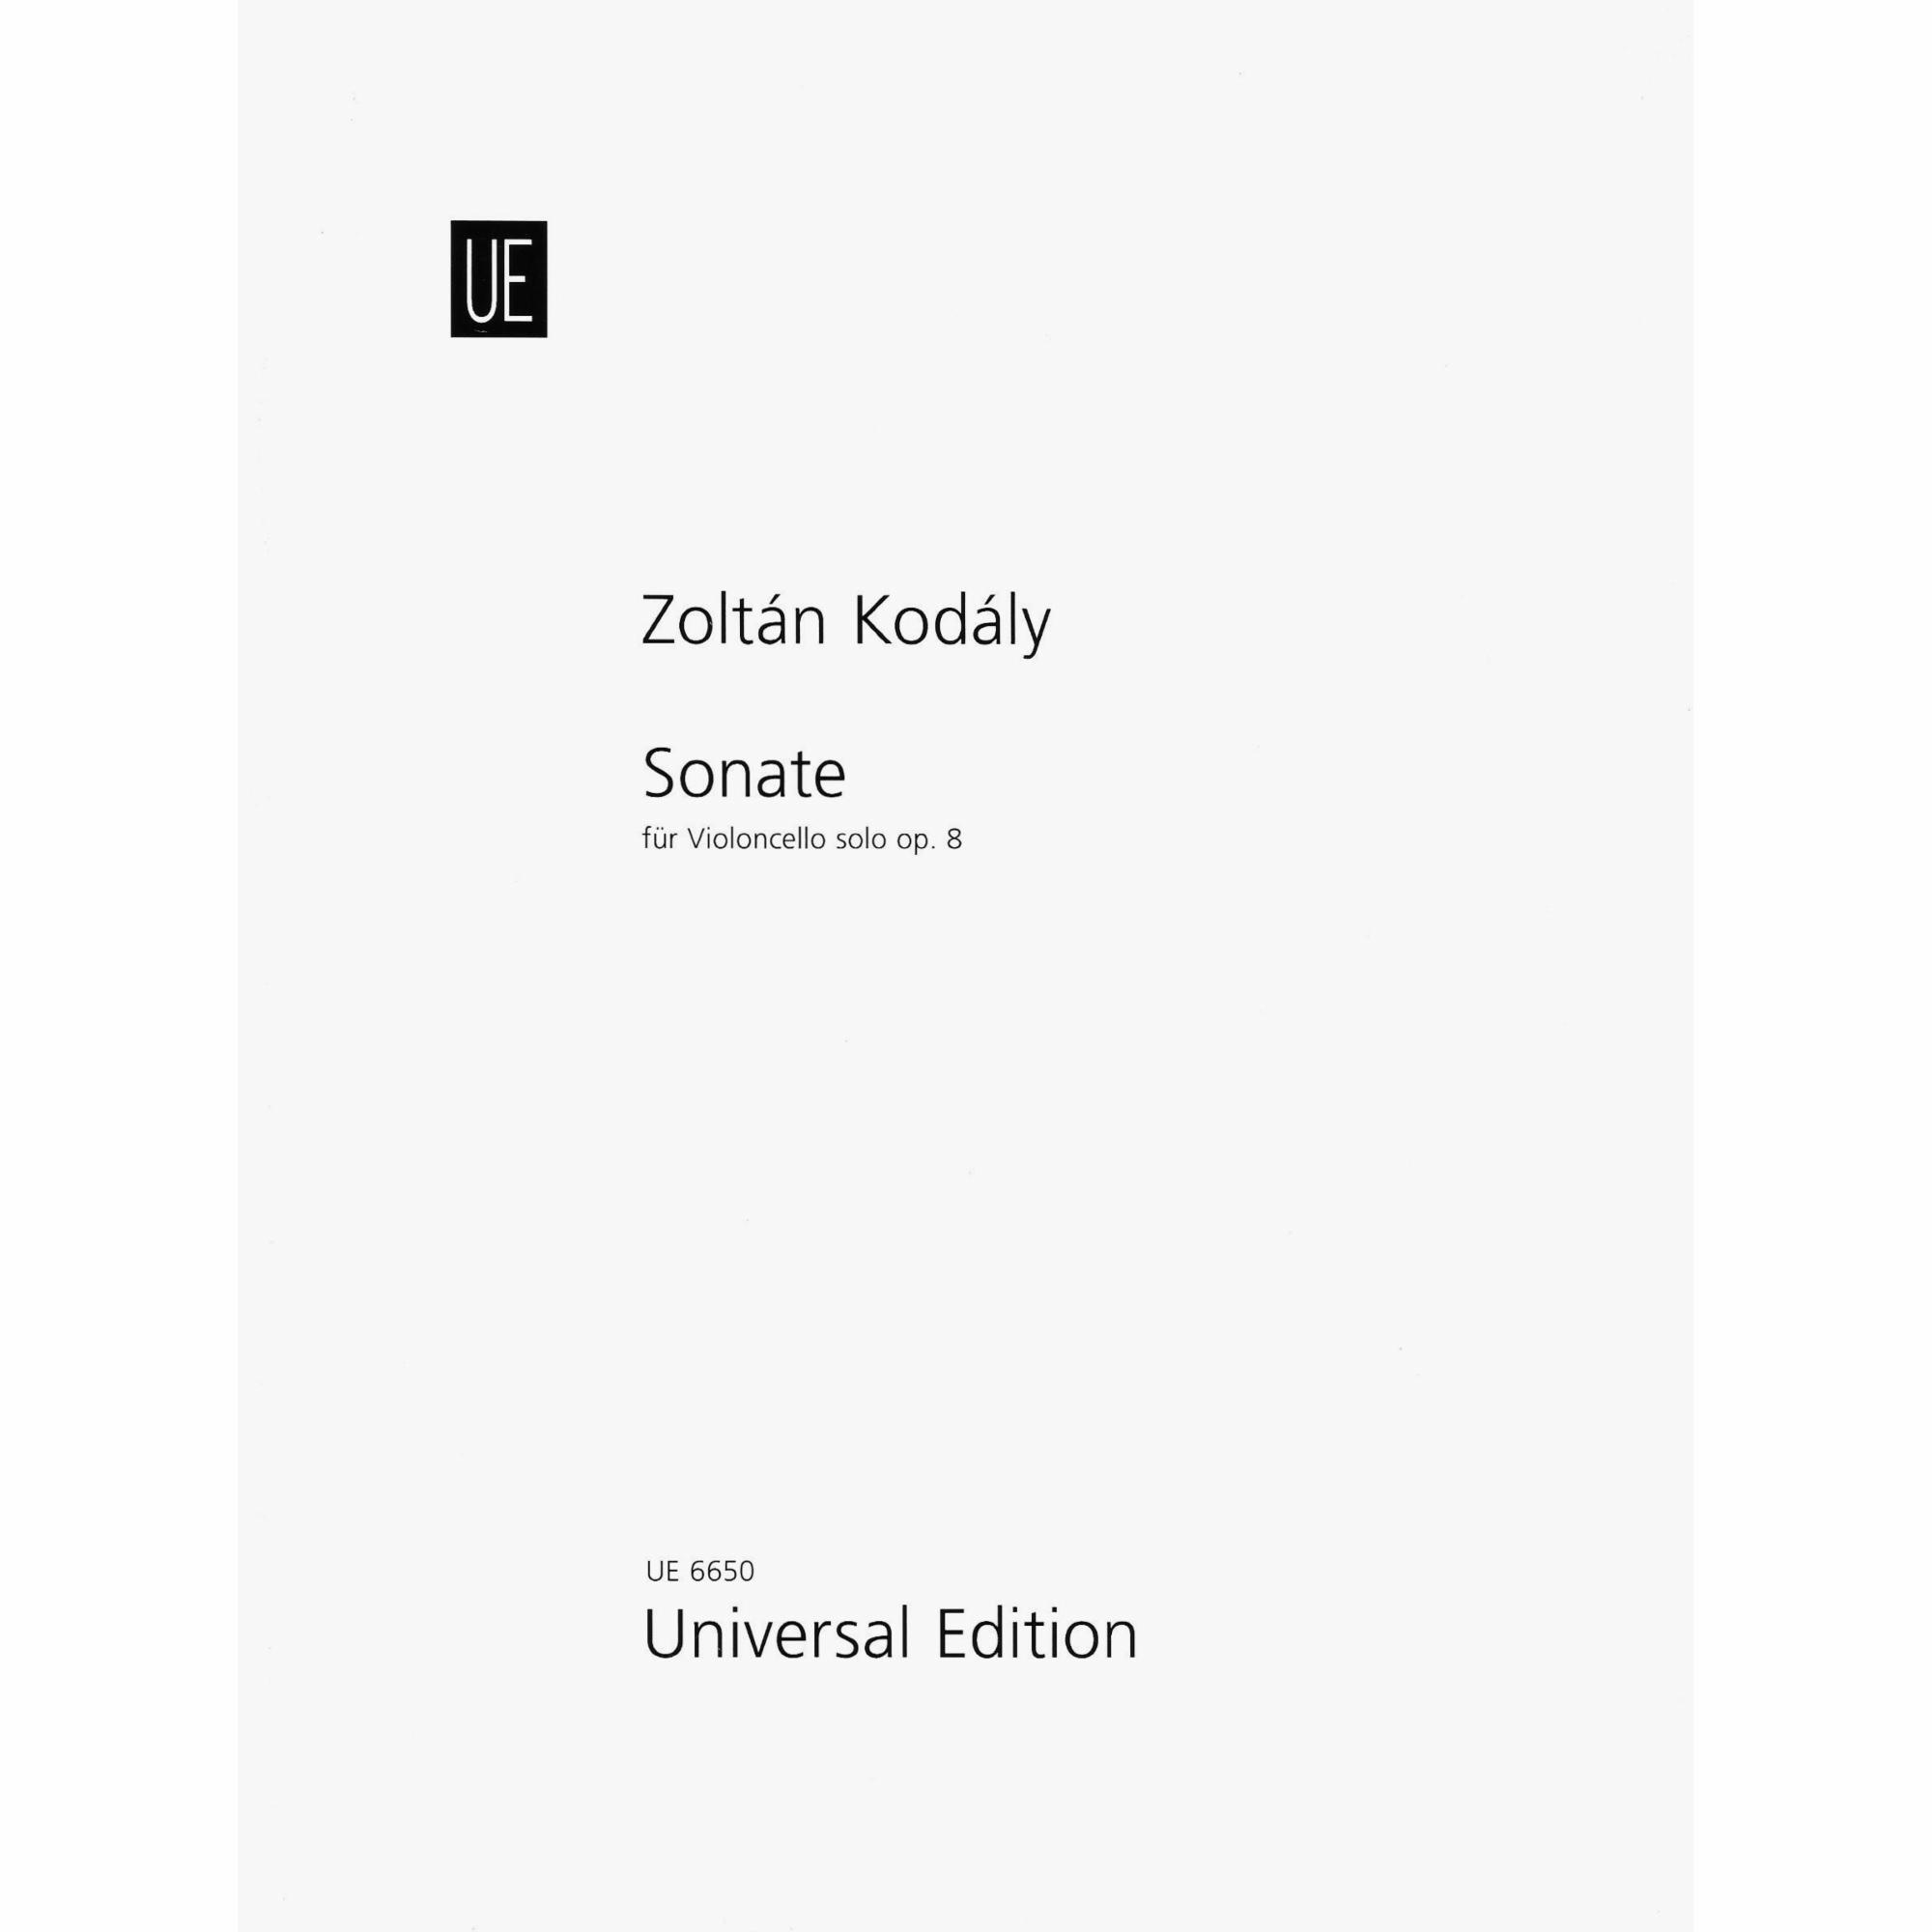 Kodaly -- Sonata, Op. 8 for Solo Cello